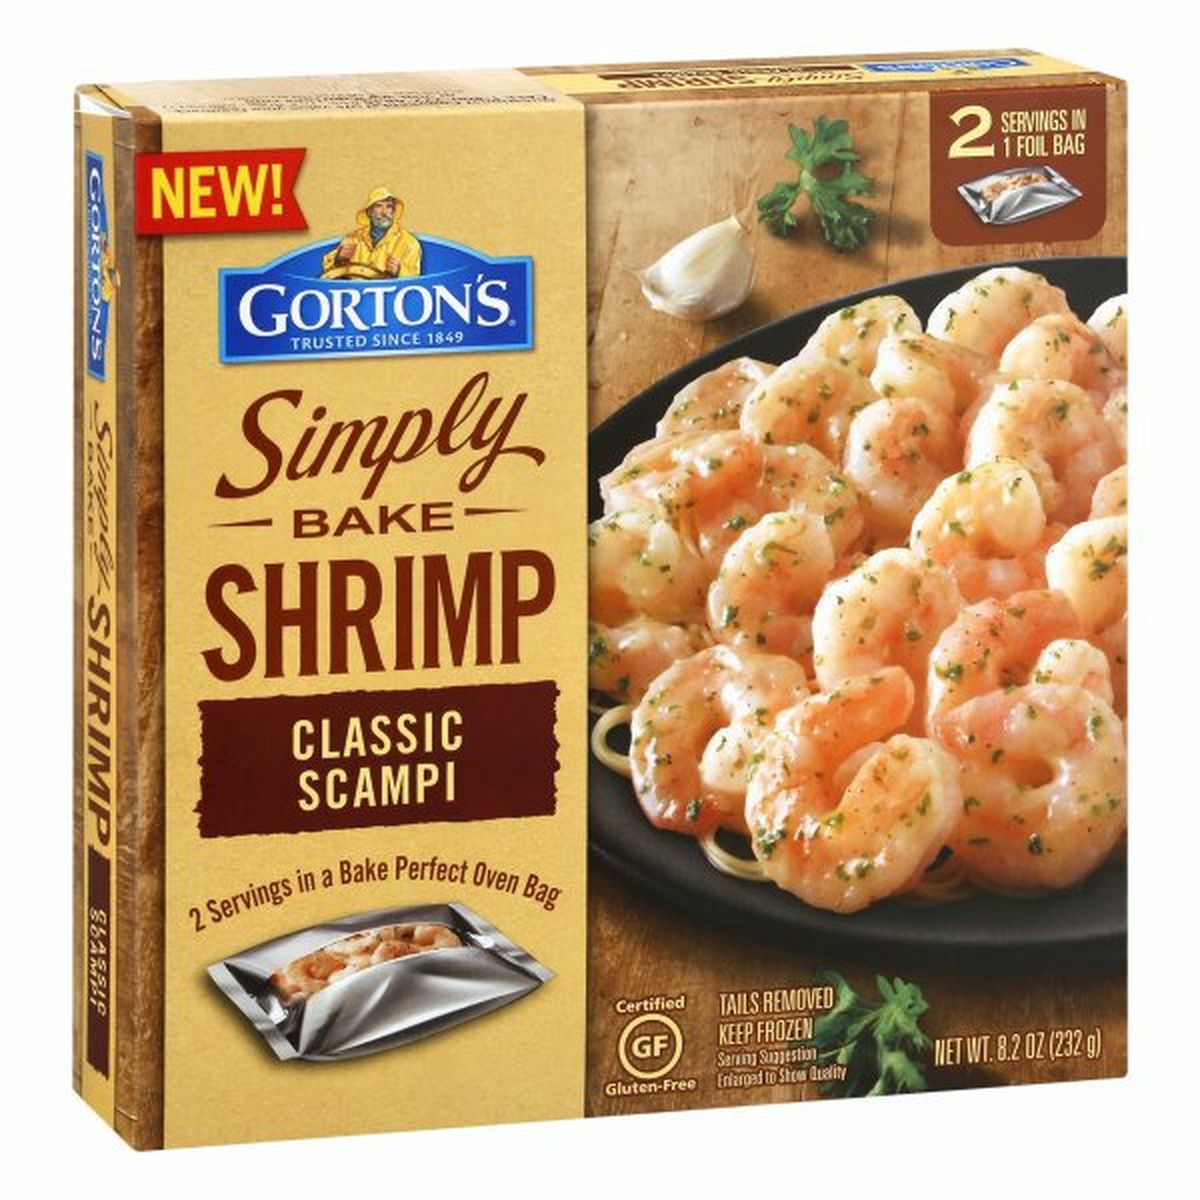 Calories in Gorton's Shrimp, Classic Scampi